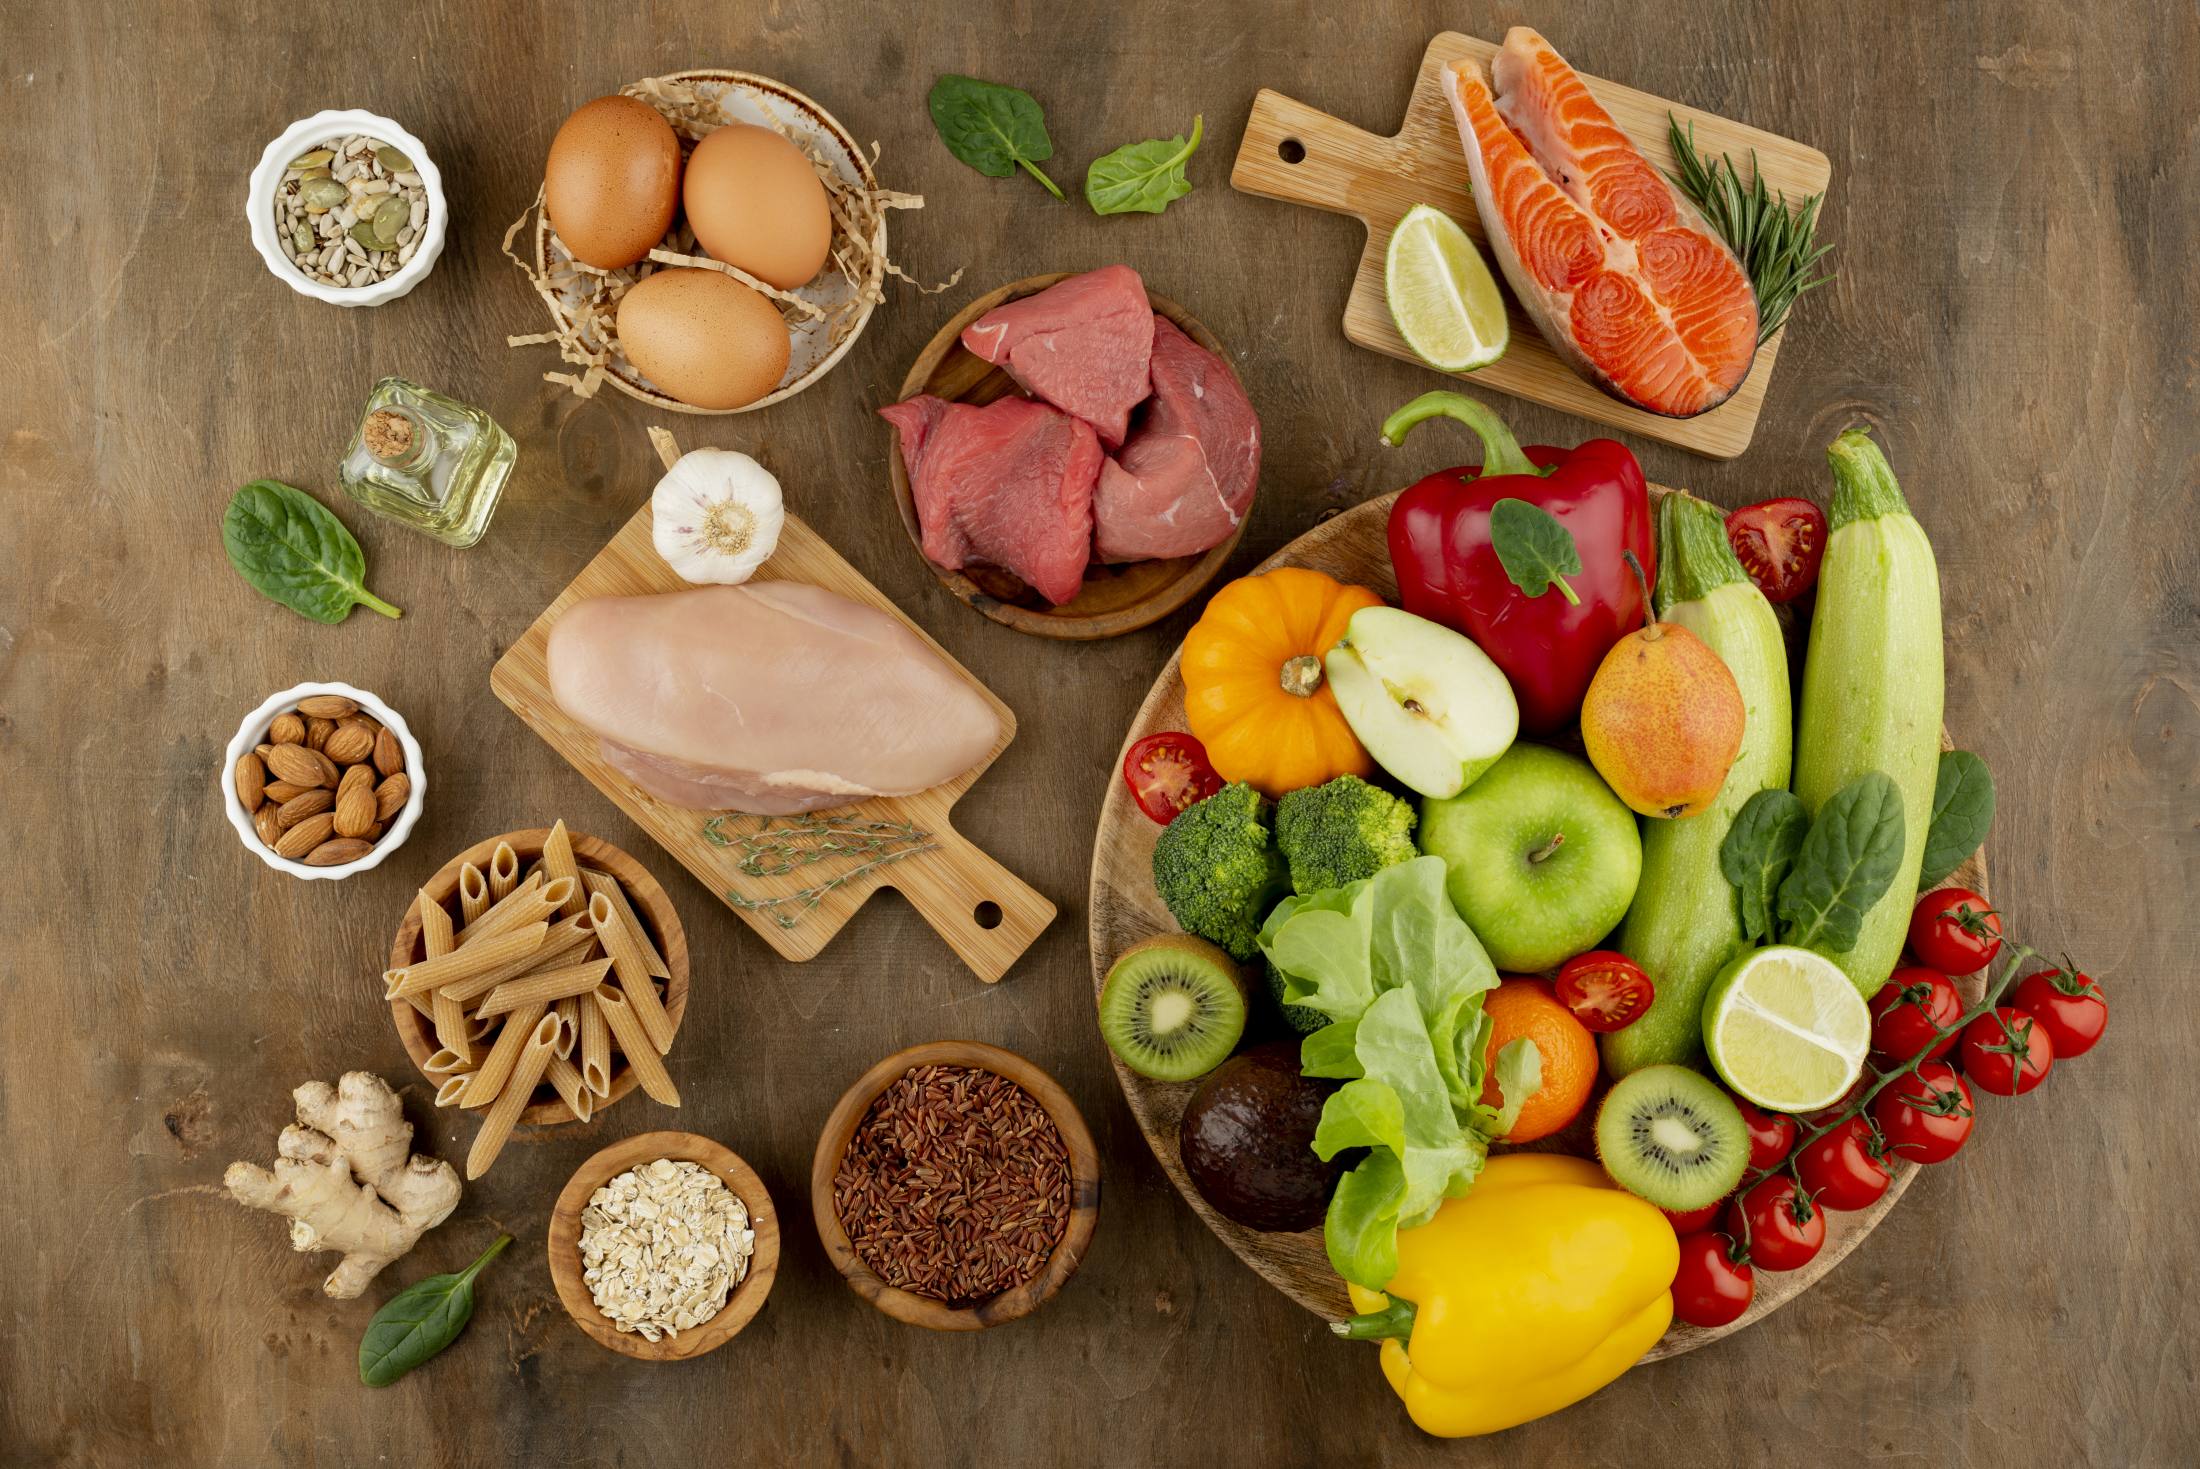 Różnorodne produkty spożywcze ułożone na drewnianym blacie, w tym warzywa, owoce, mięso, jaja, orzechy, makarony i olej